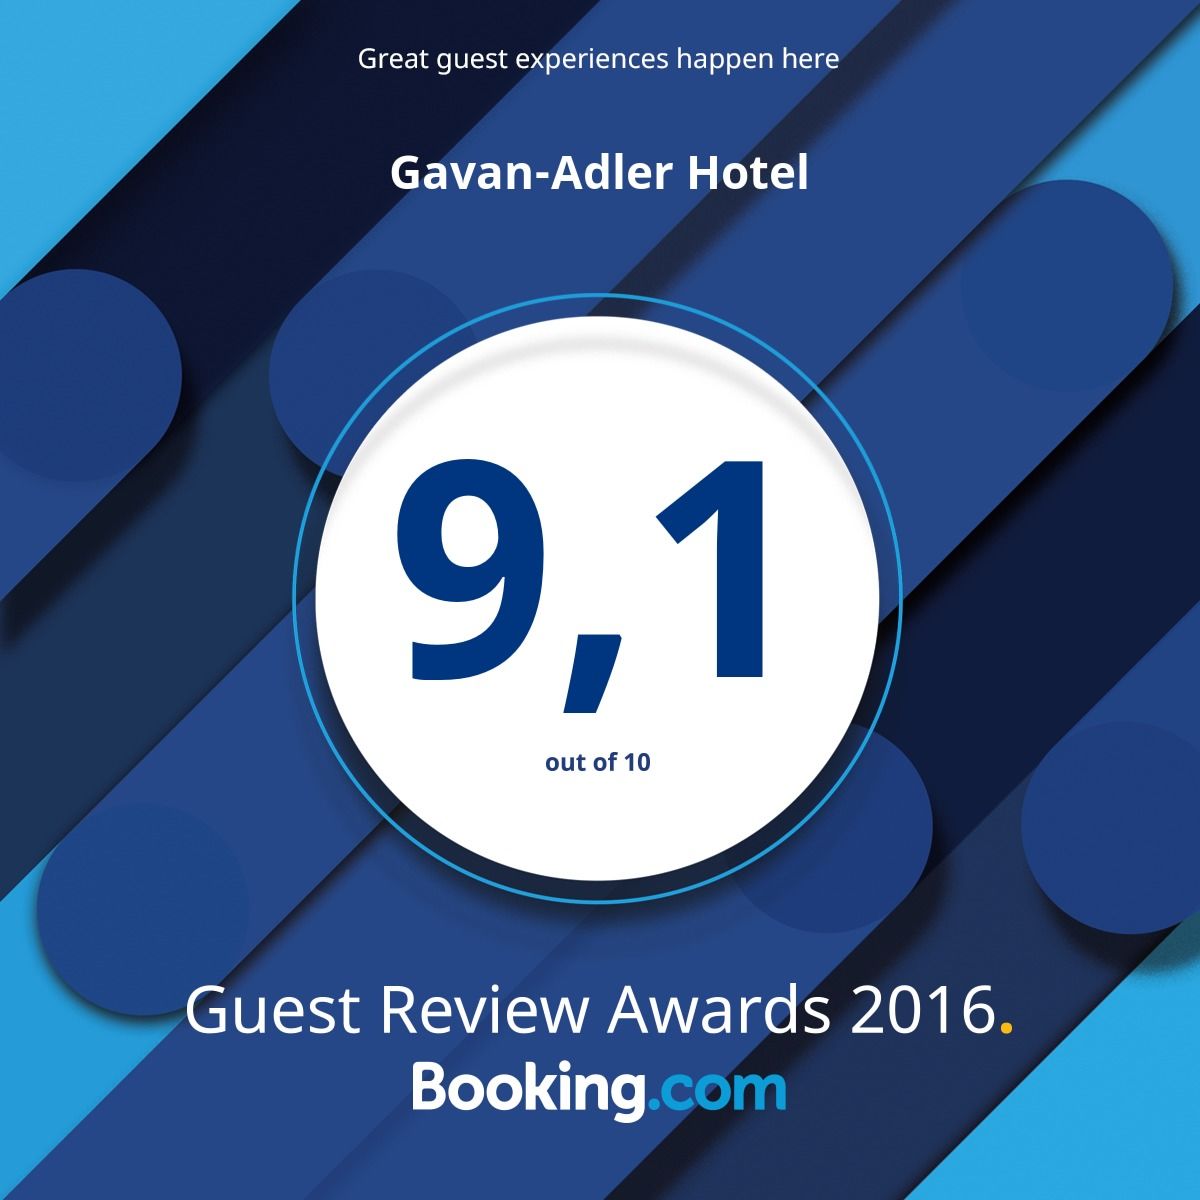 Оценка гостеприимства гостевого дома Адлер-Гавань в 2016 году